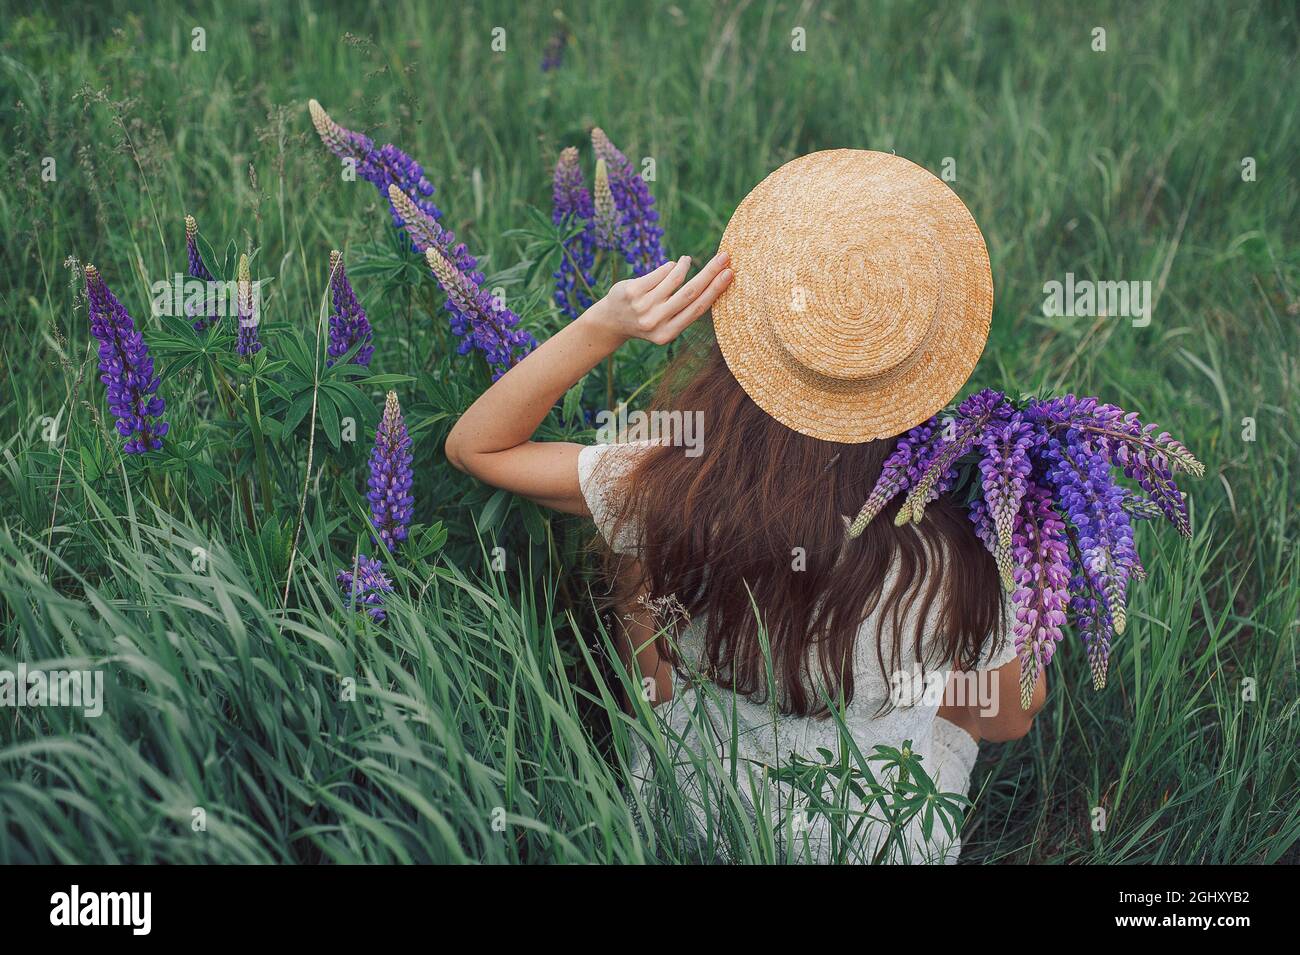 Belle femme romantique avec bouquet de lupins joyeusement en robe blanche et chapeau assis dans le champ des fleurs de lupin pourpre. Mise au point sélective douce Banque D'Images